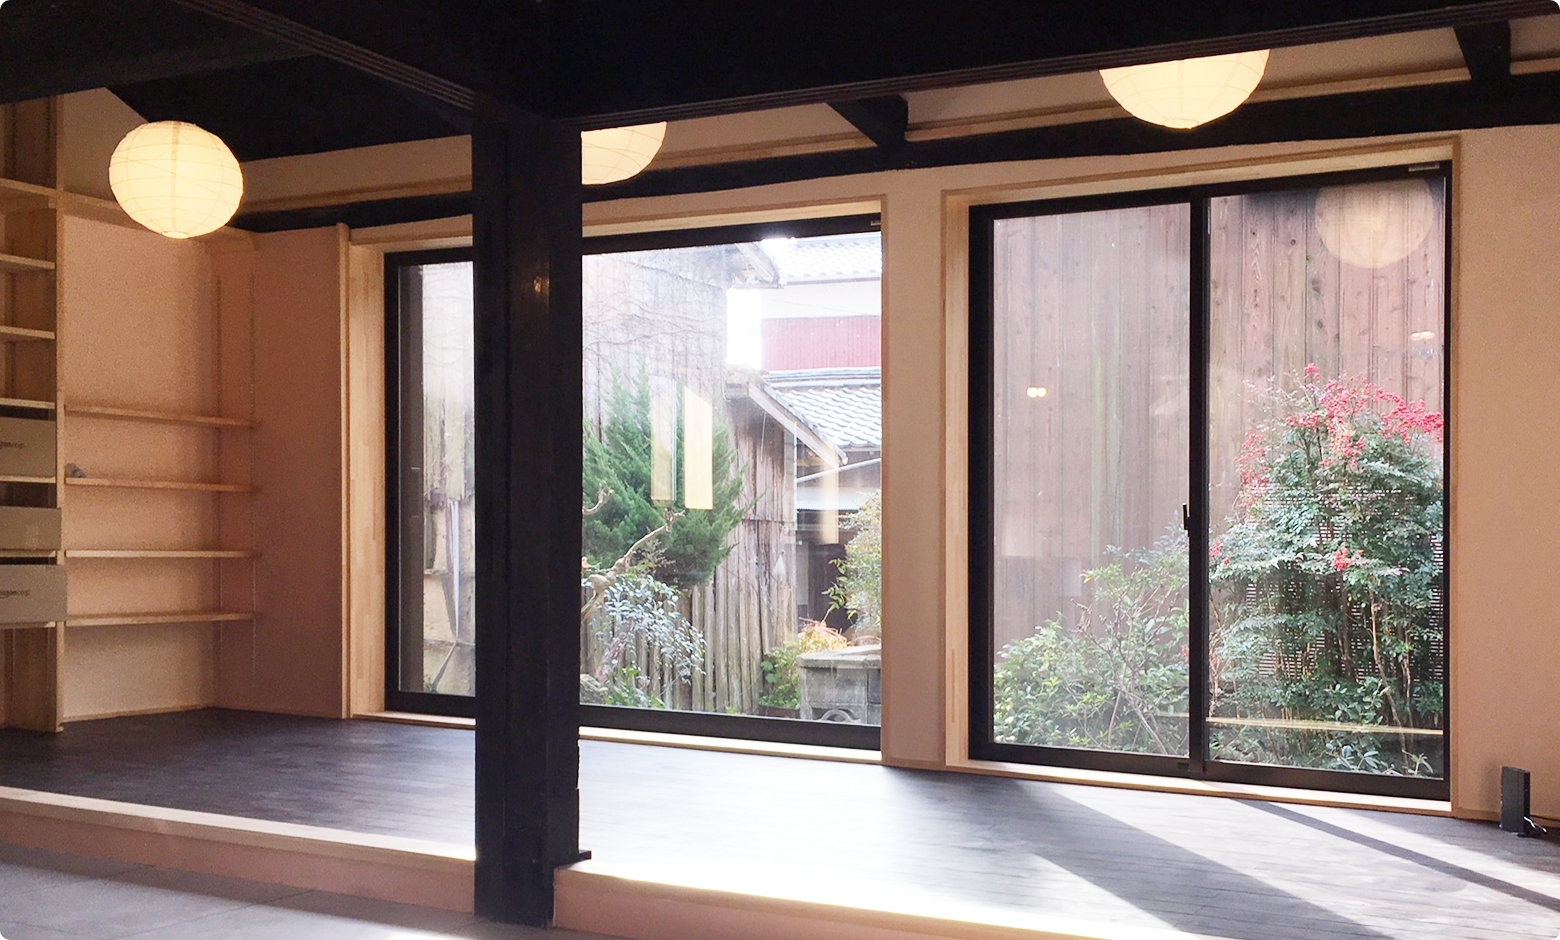 周防大島オフィス内部の様子です。副社長永井の両親が生まれ育った築150年の家を、古民家の雰囲気を残しつつ、リノベーションしています。